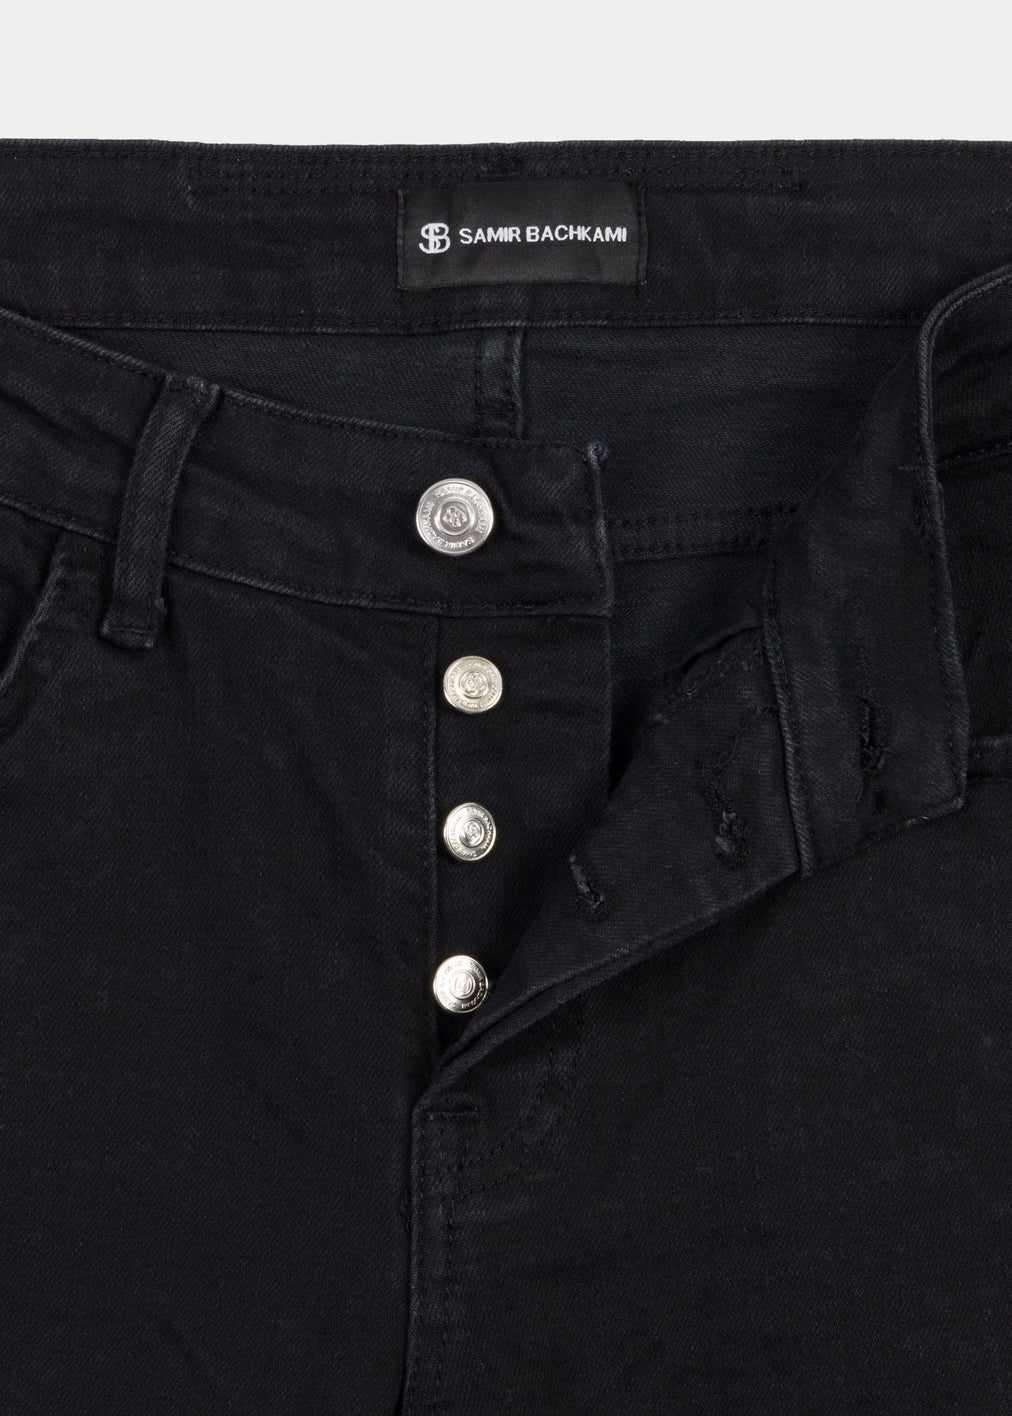 Distressed Grey Skinny Fit Jeans - Samir Bachkami